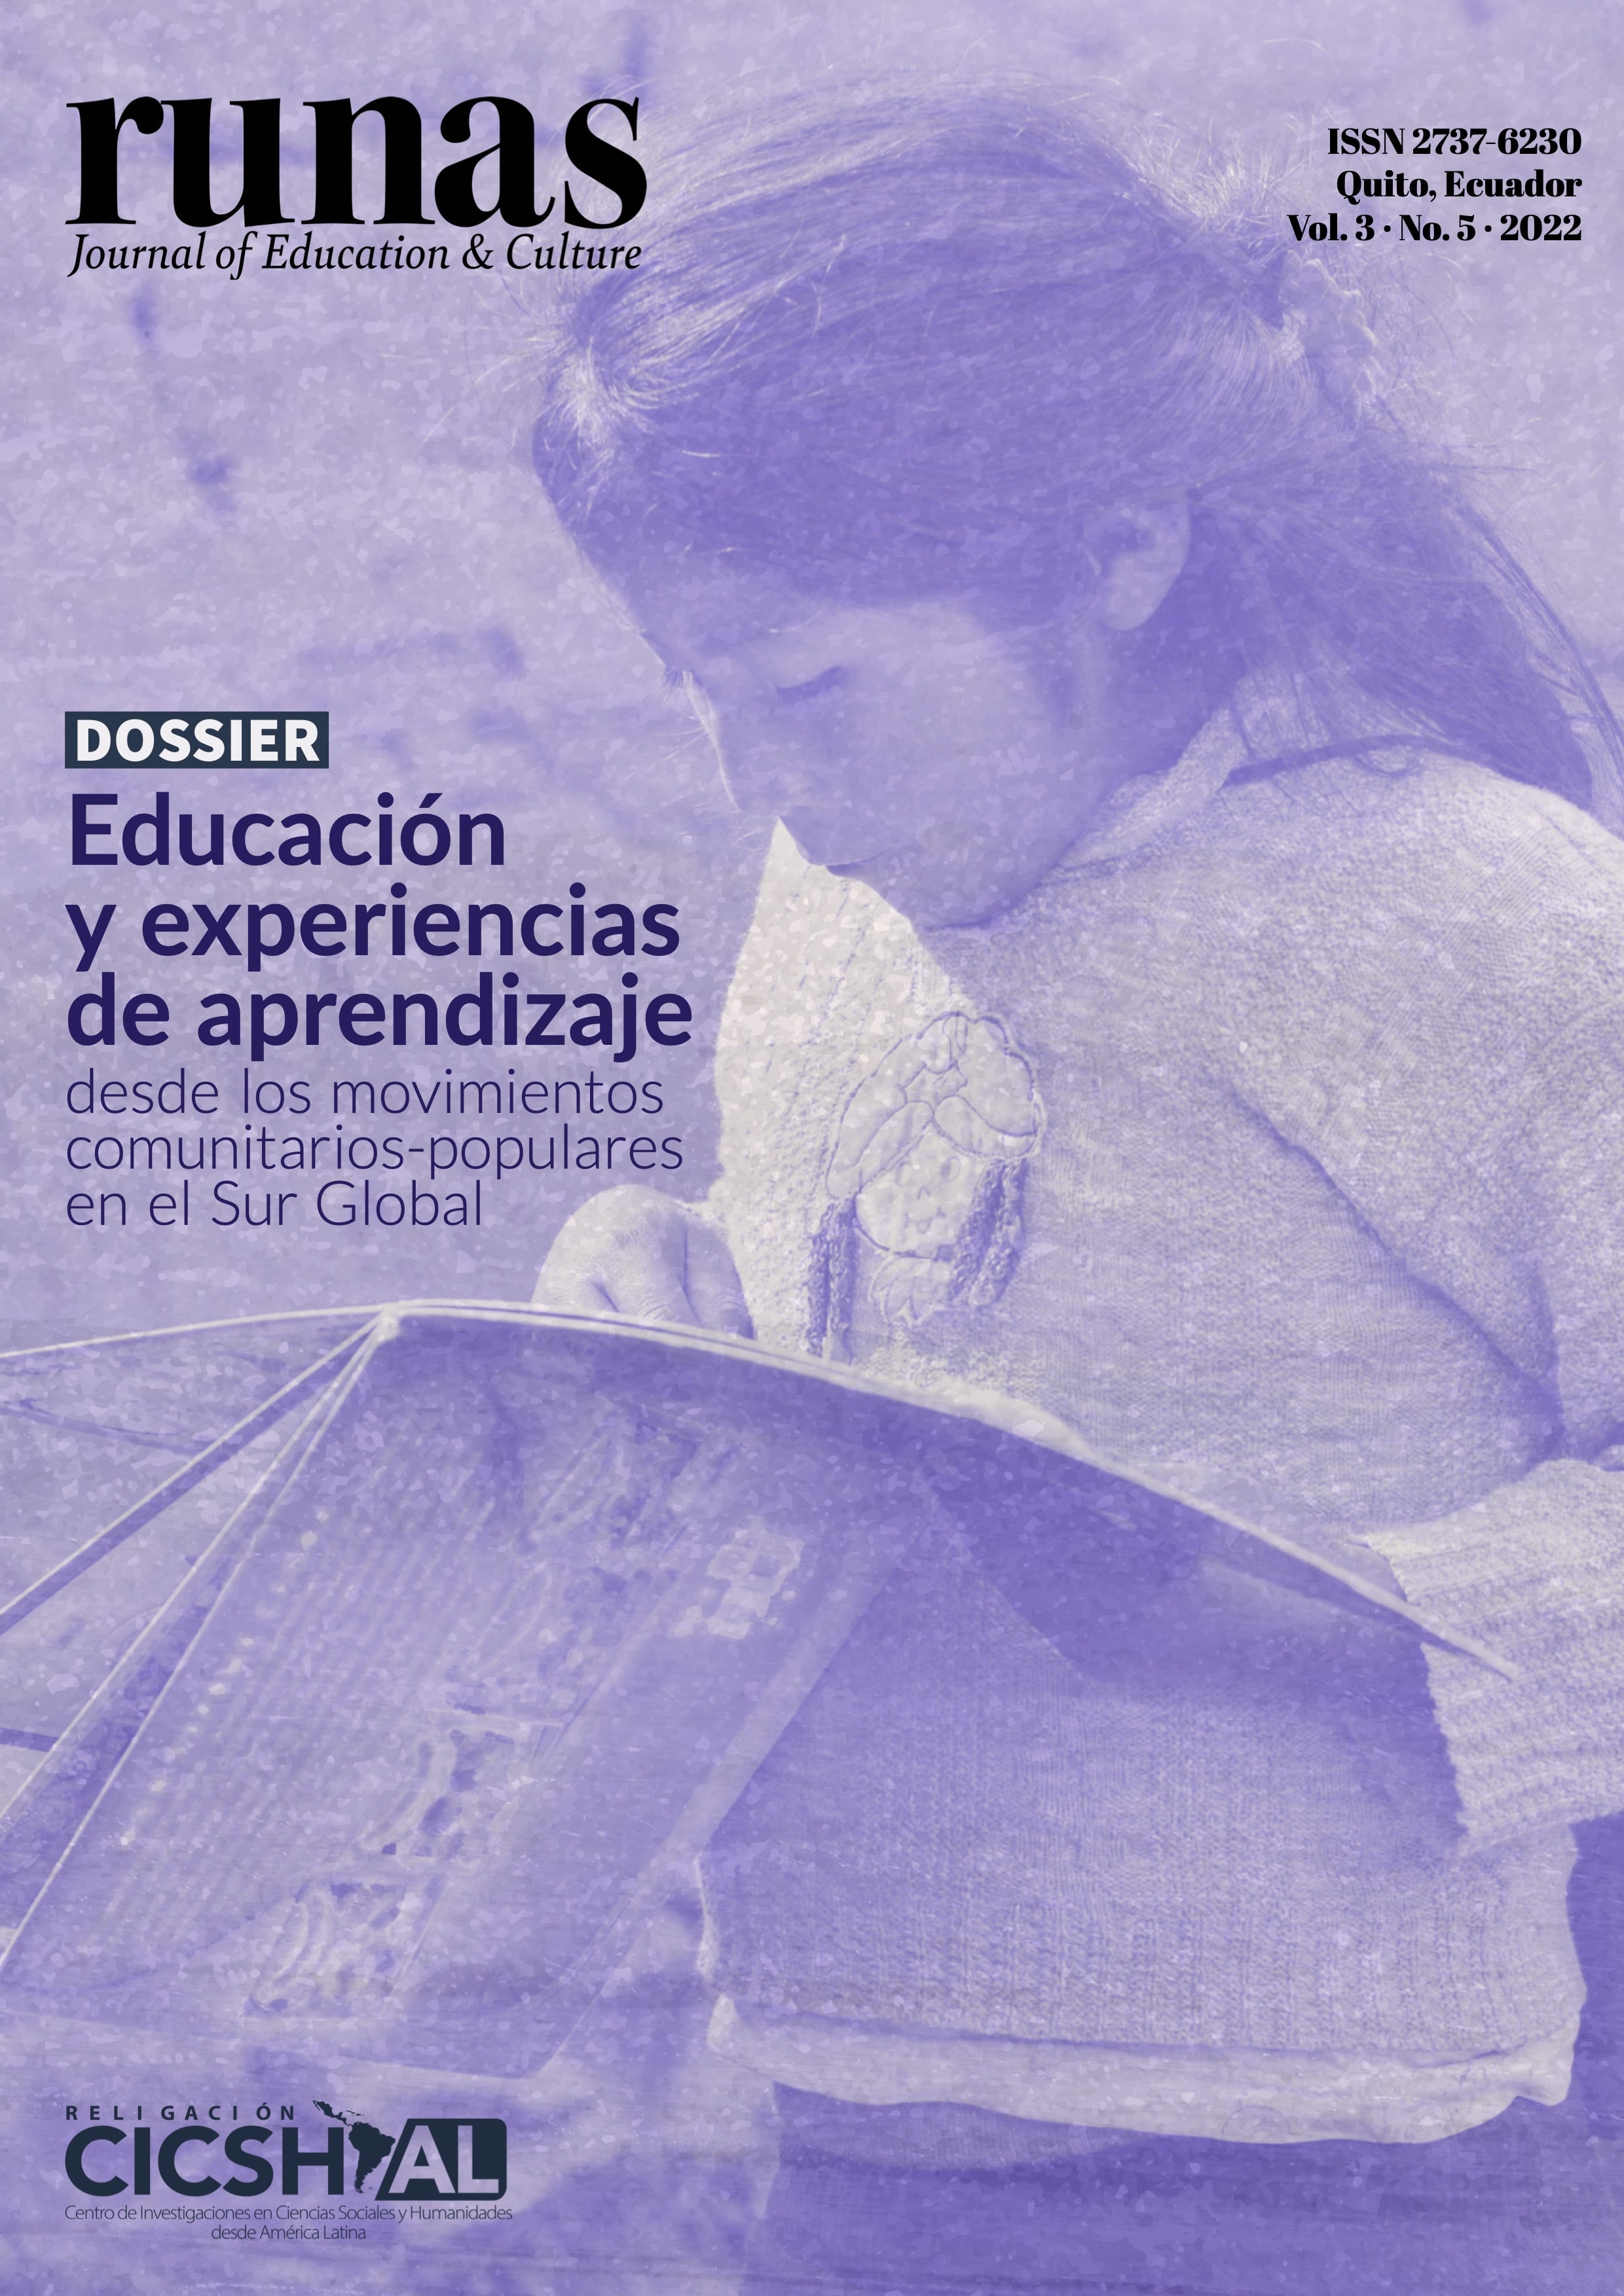 Dossier | Educación y experiencias de aprendizaje desde los movimientos comunitarios-populares en el Sur Global.